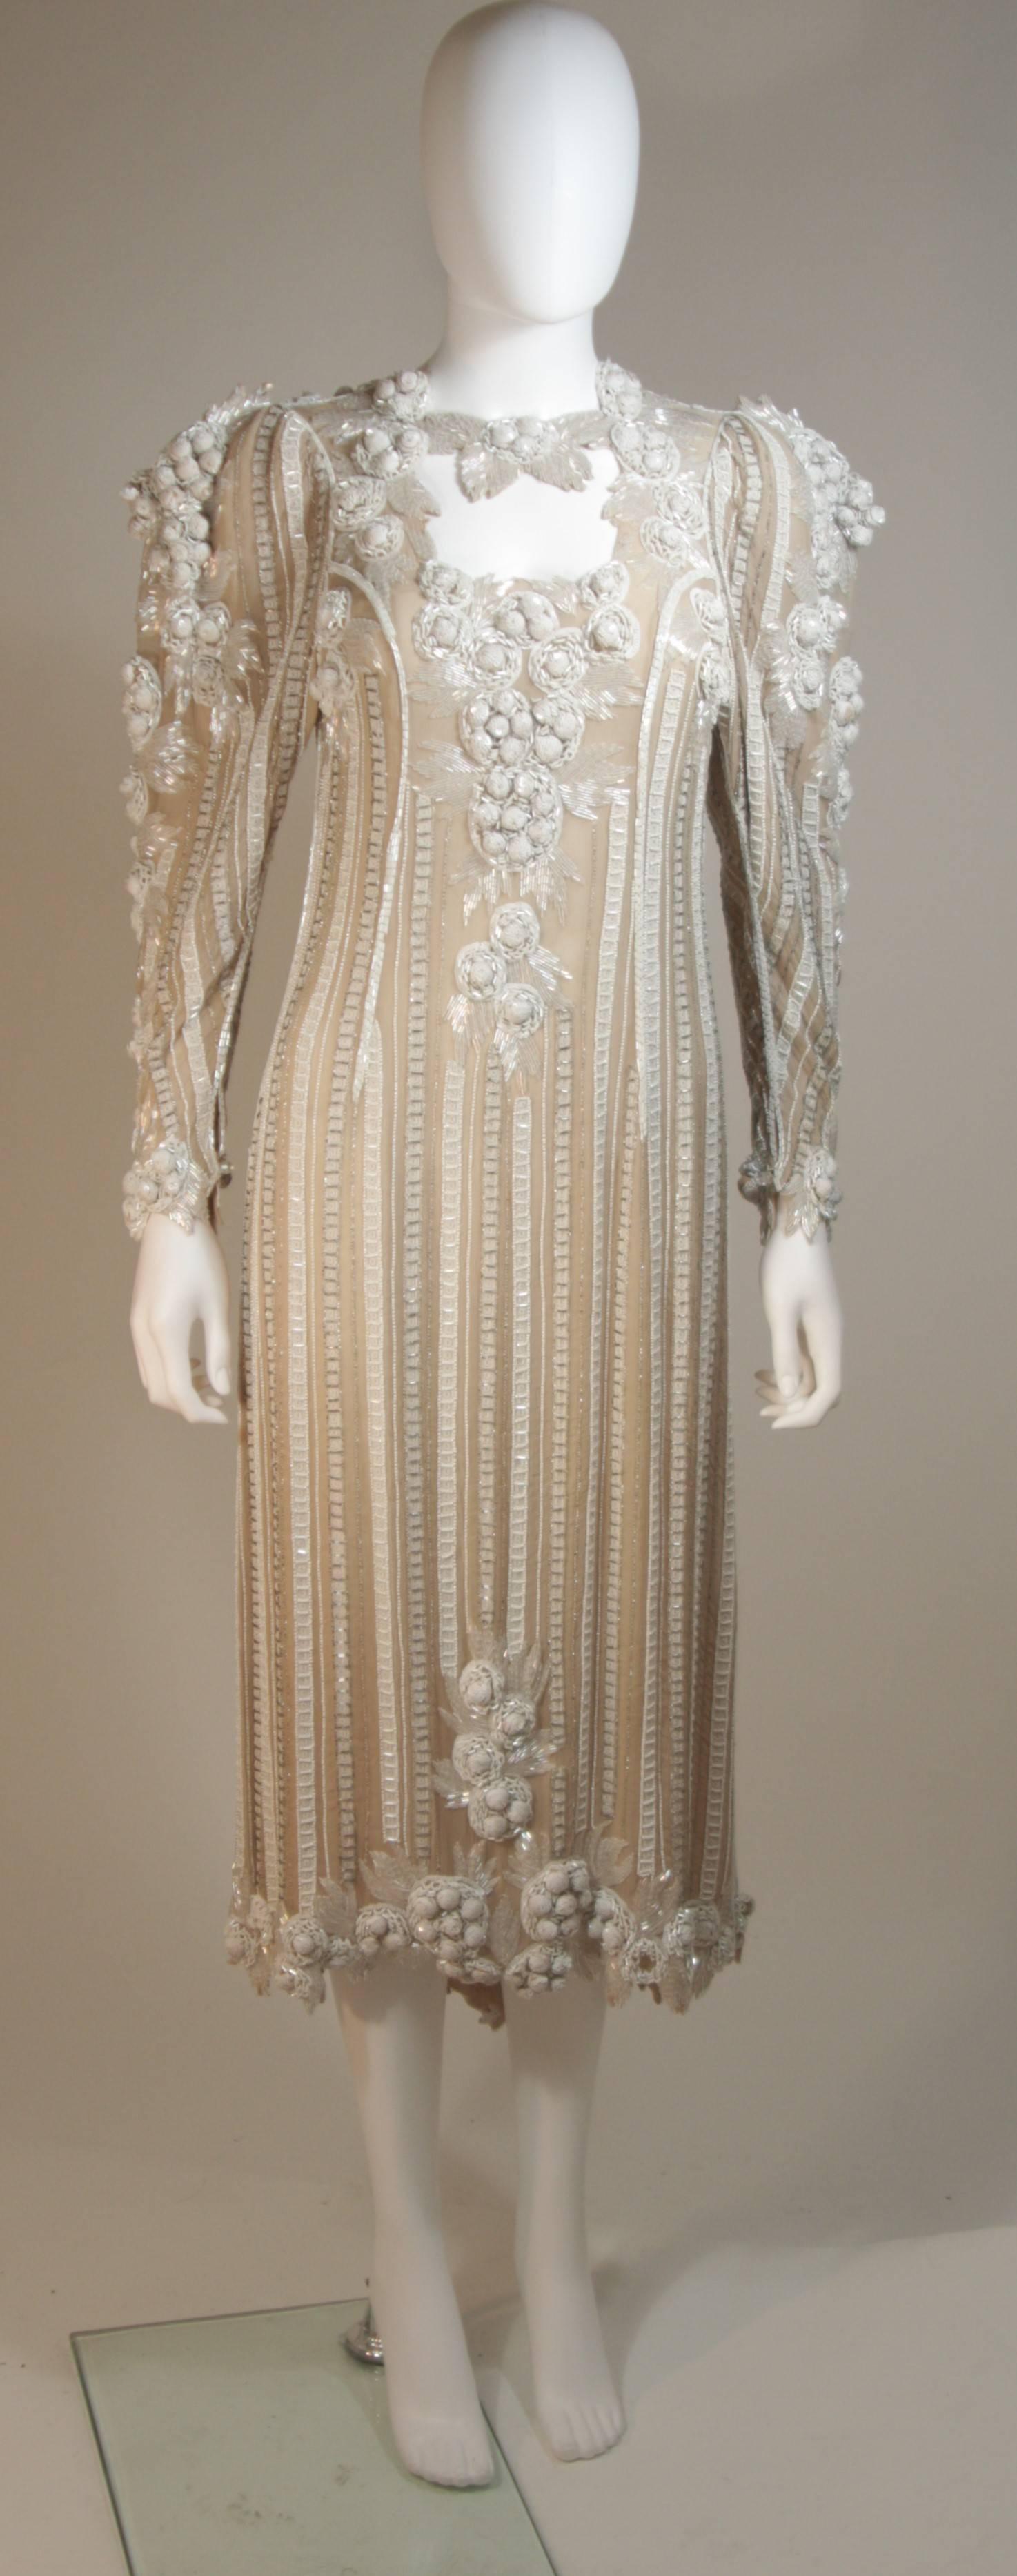  Cette robe est composée d'une soie ivoire perlée. Il présente de superbes applications de perles et de paillettes avec des perles en relief et des détails dimensionnels en forme d'épaulettes. Il y a des fermetures à boutons au centre du dos. En